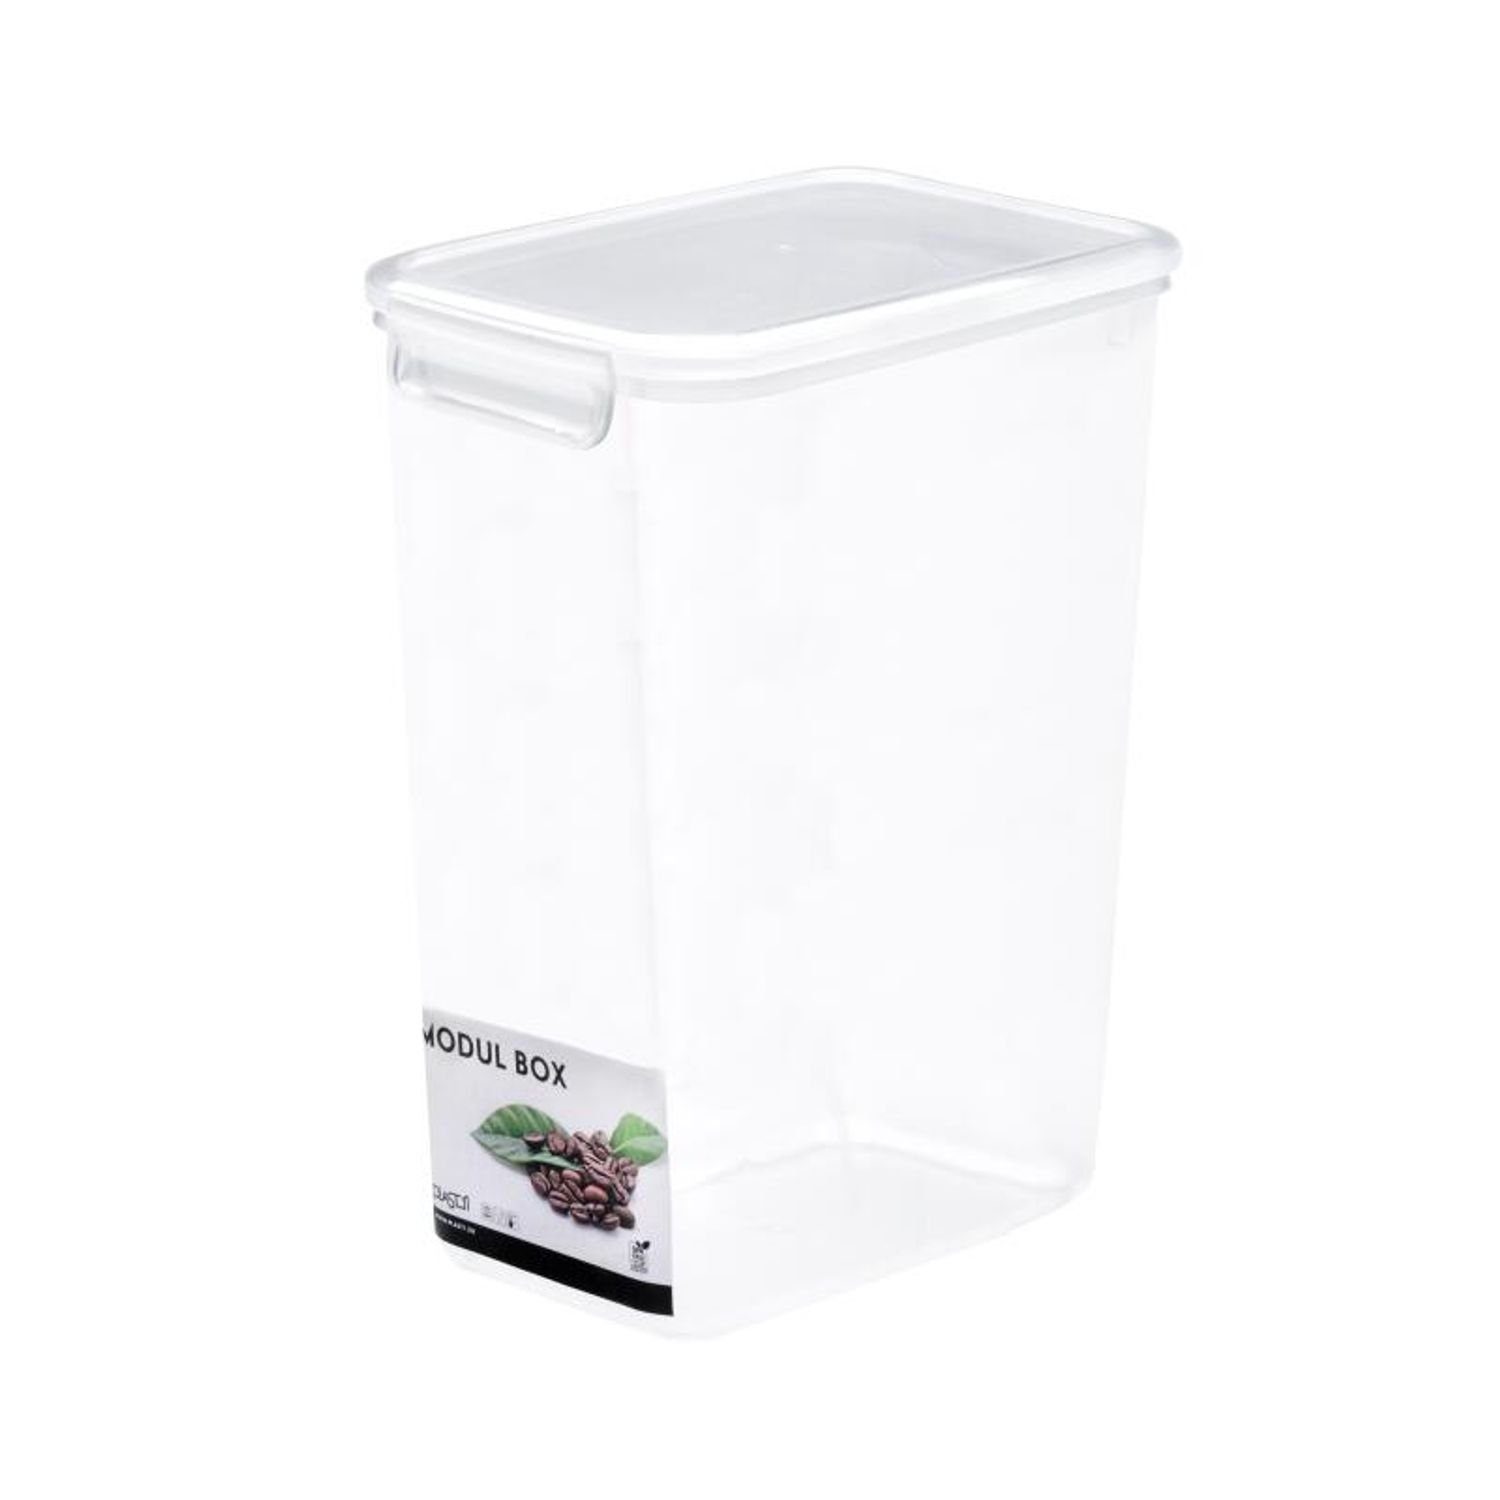 PLAST1 Vorratsdose 10x Vorratsbox 2,6L Frischhaltedosen Behälter Boxen Aufbewahrung Küche, Kunststoff